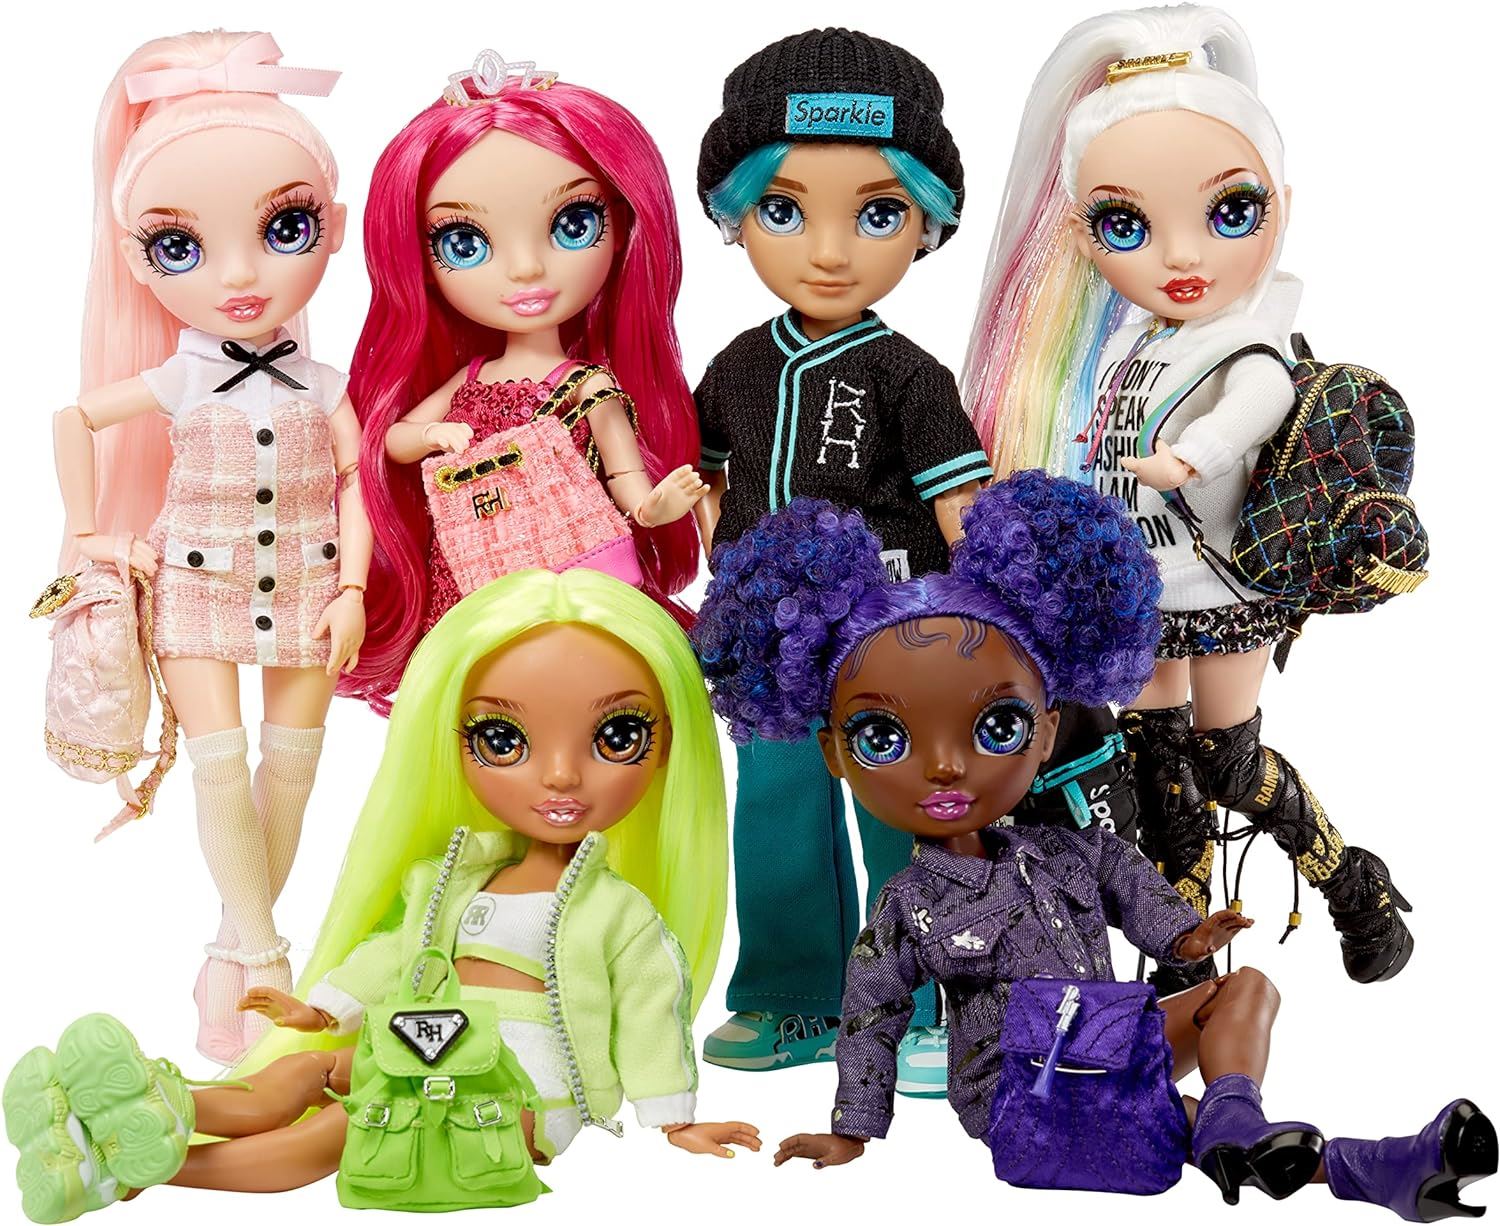 Rainbow High Jr Stella Monroe Fuschia Pink Doll + Accessories 583004 Series 2